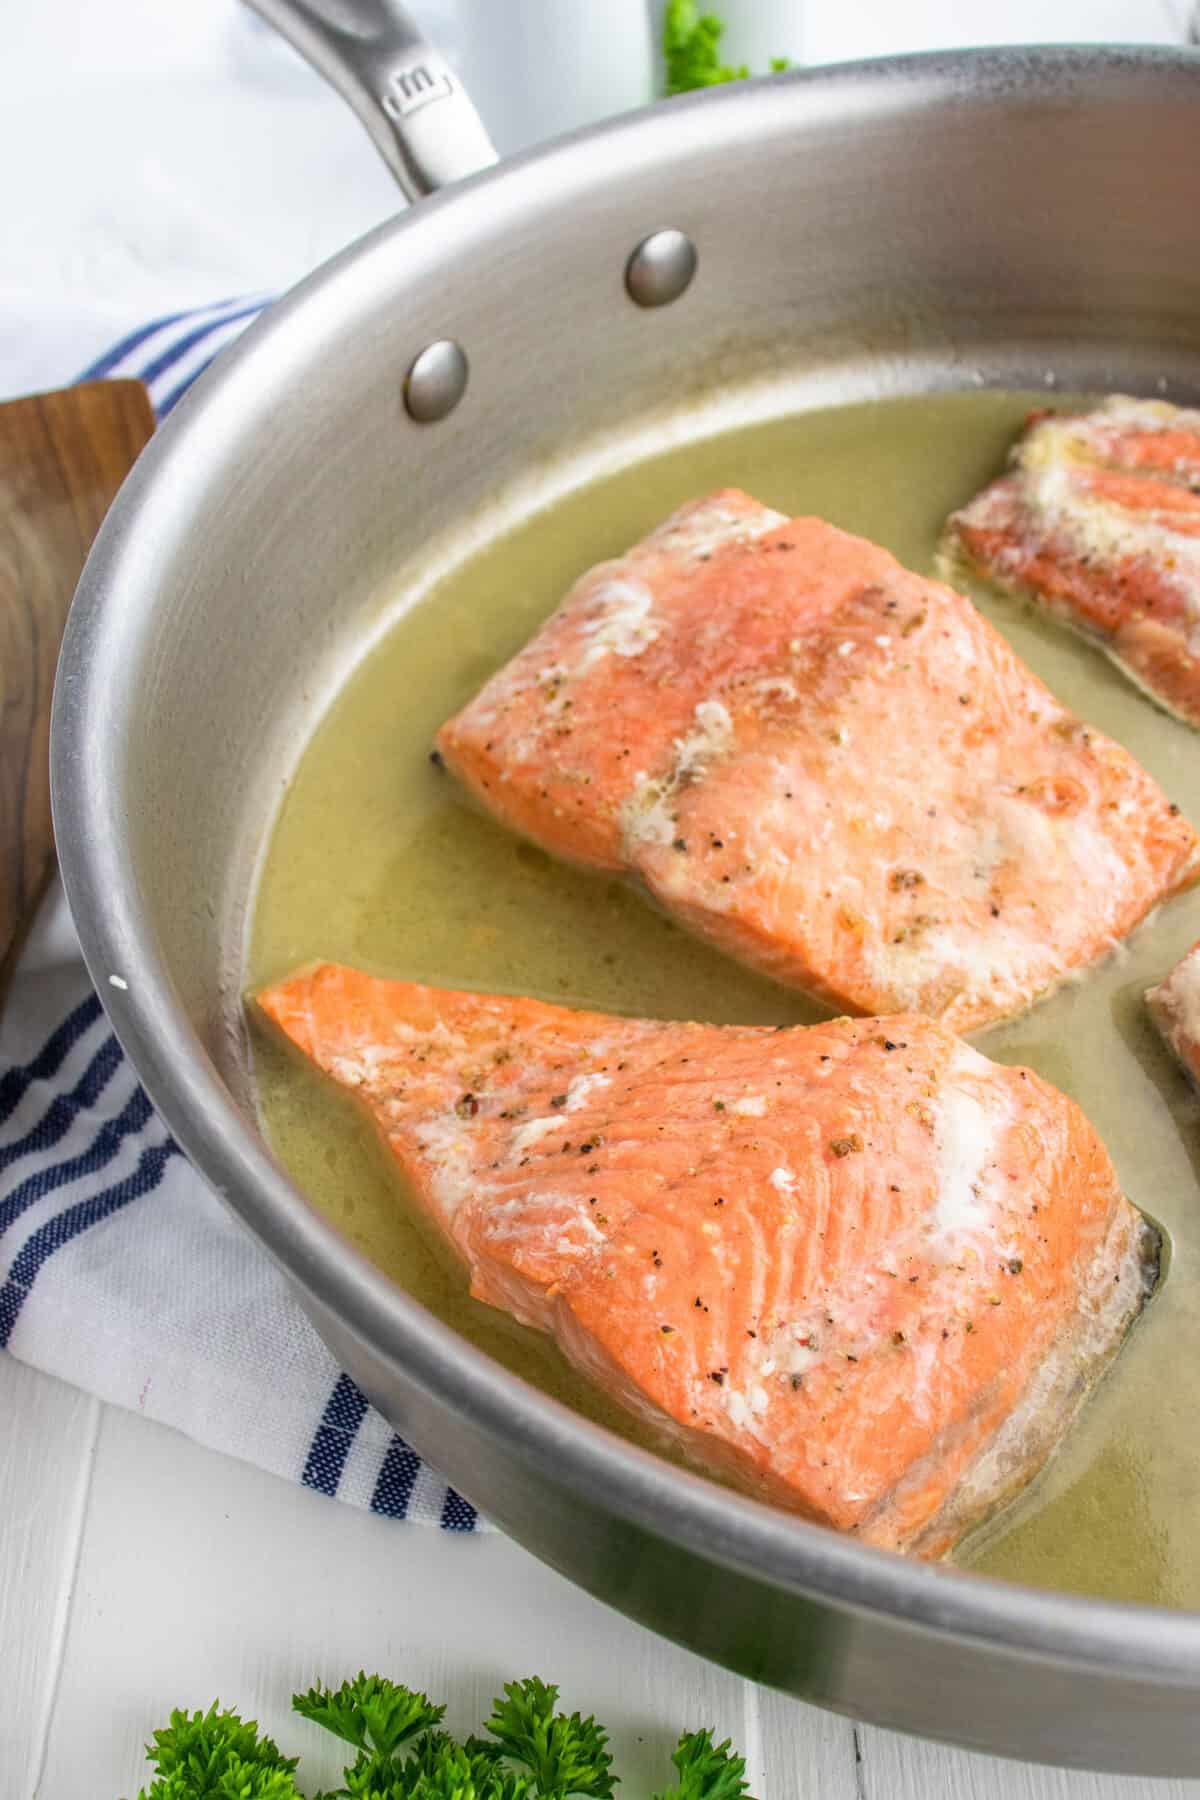 poaching salmon fillets in a pan